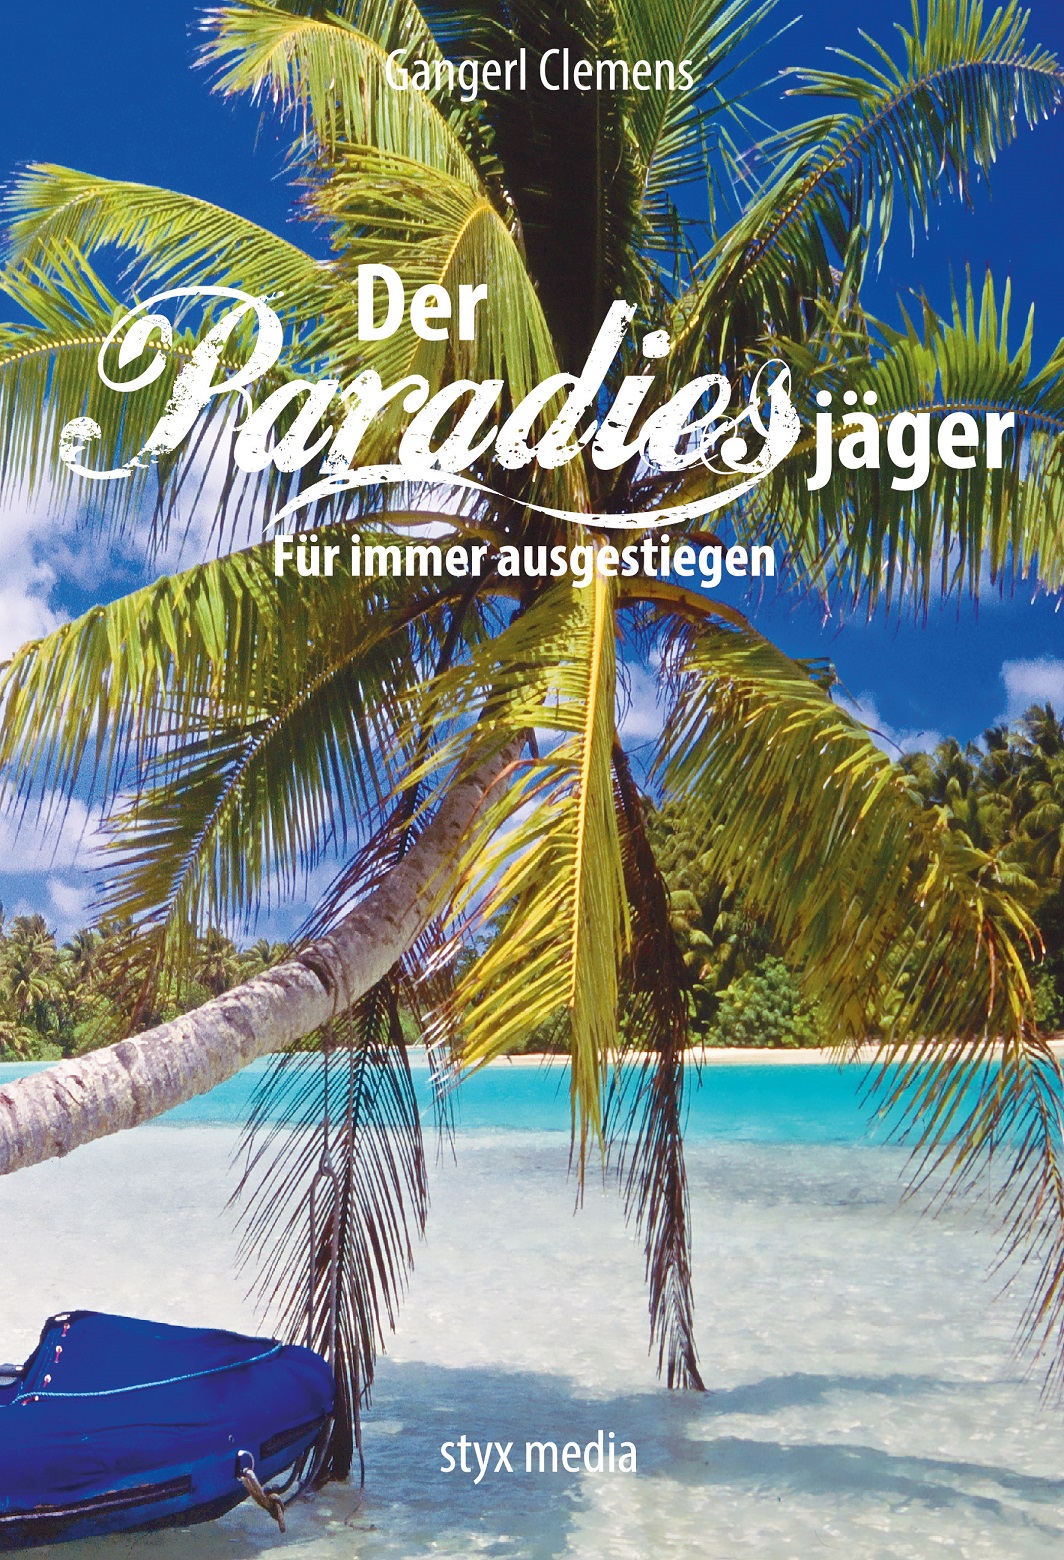 Der Paradiesjäger - Für immer ausgestiegen (Band 1)